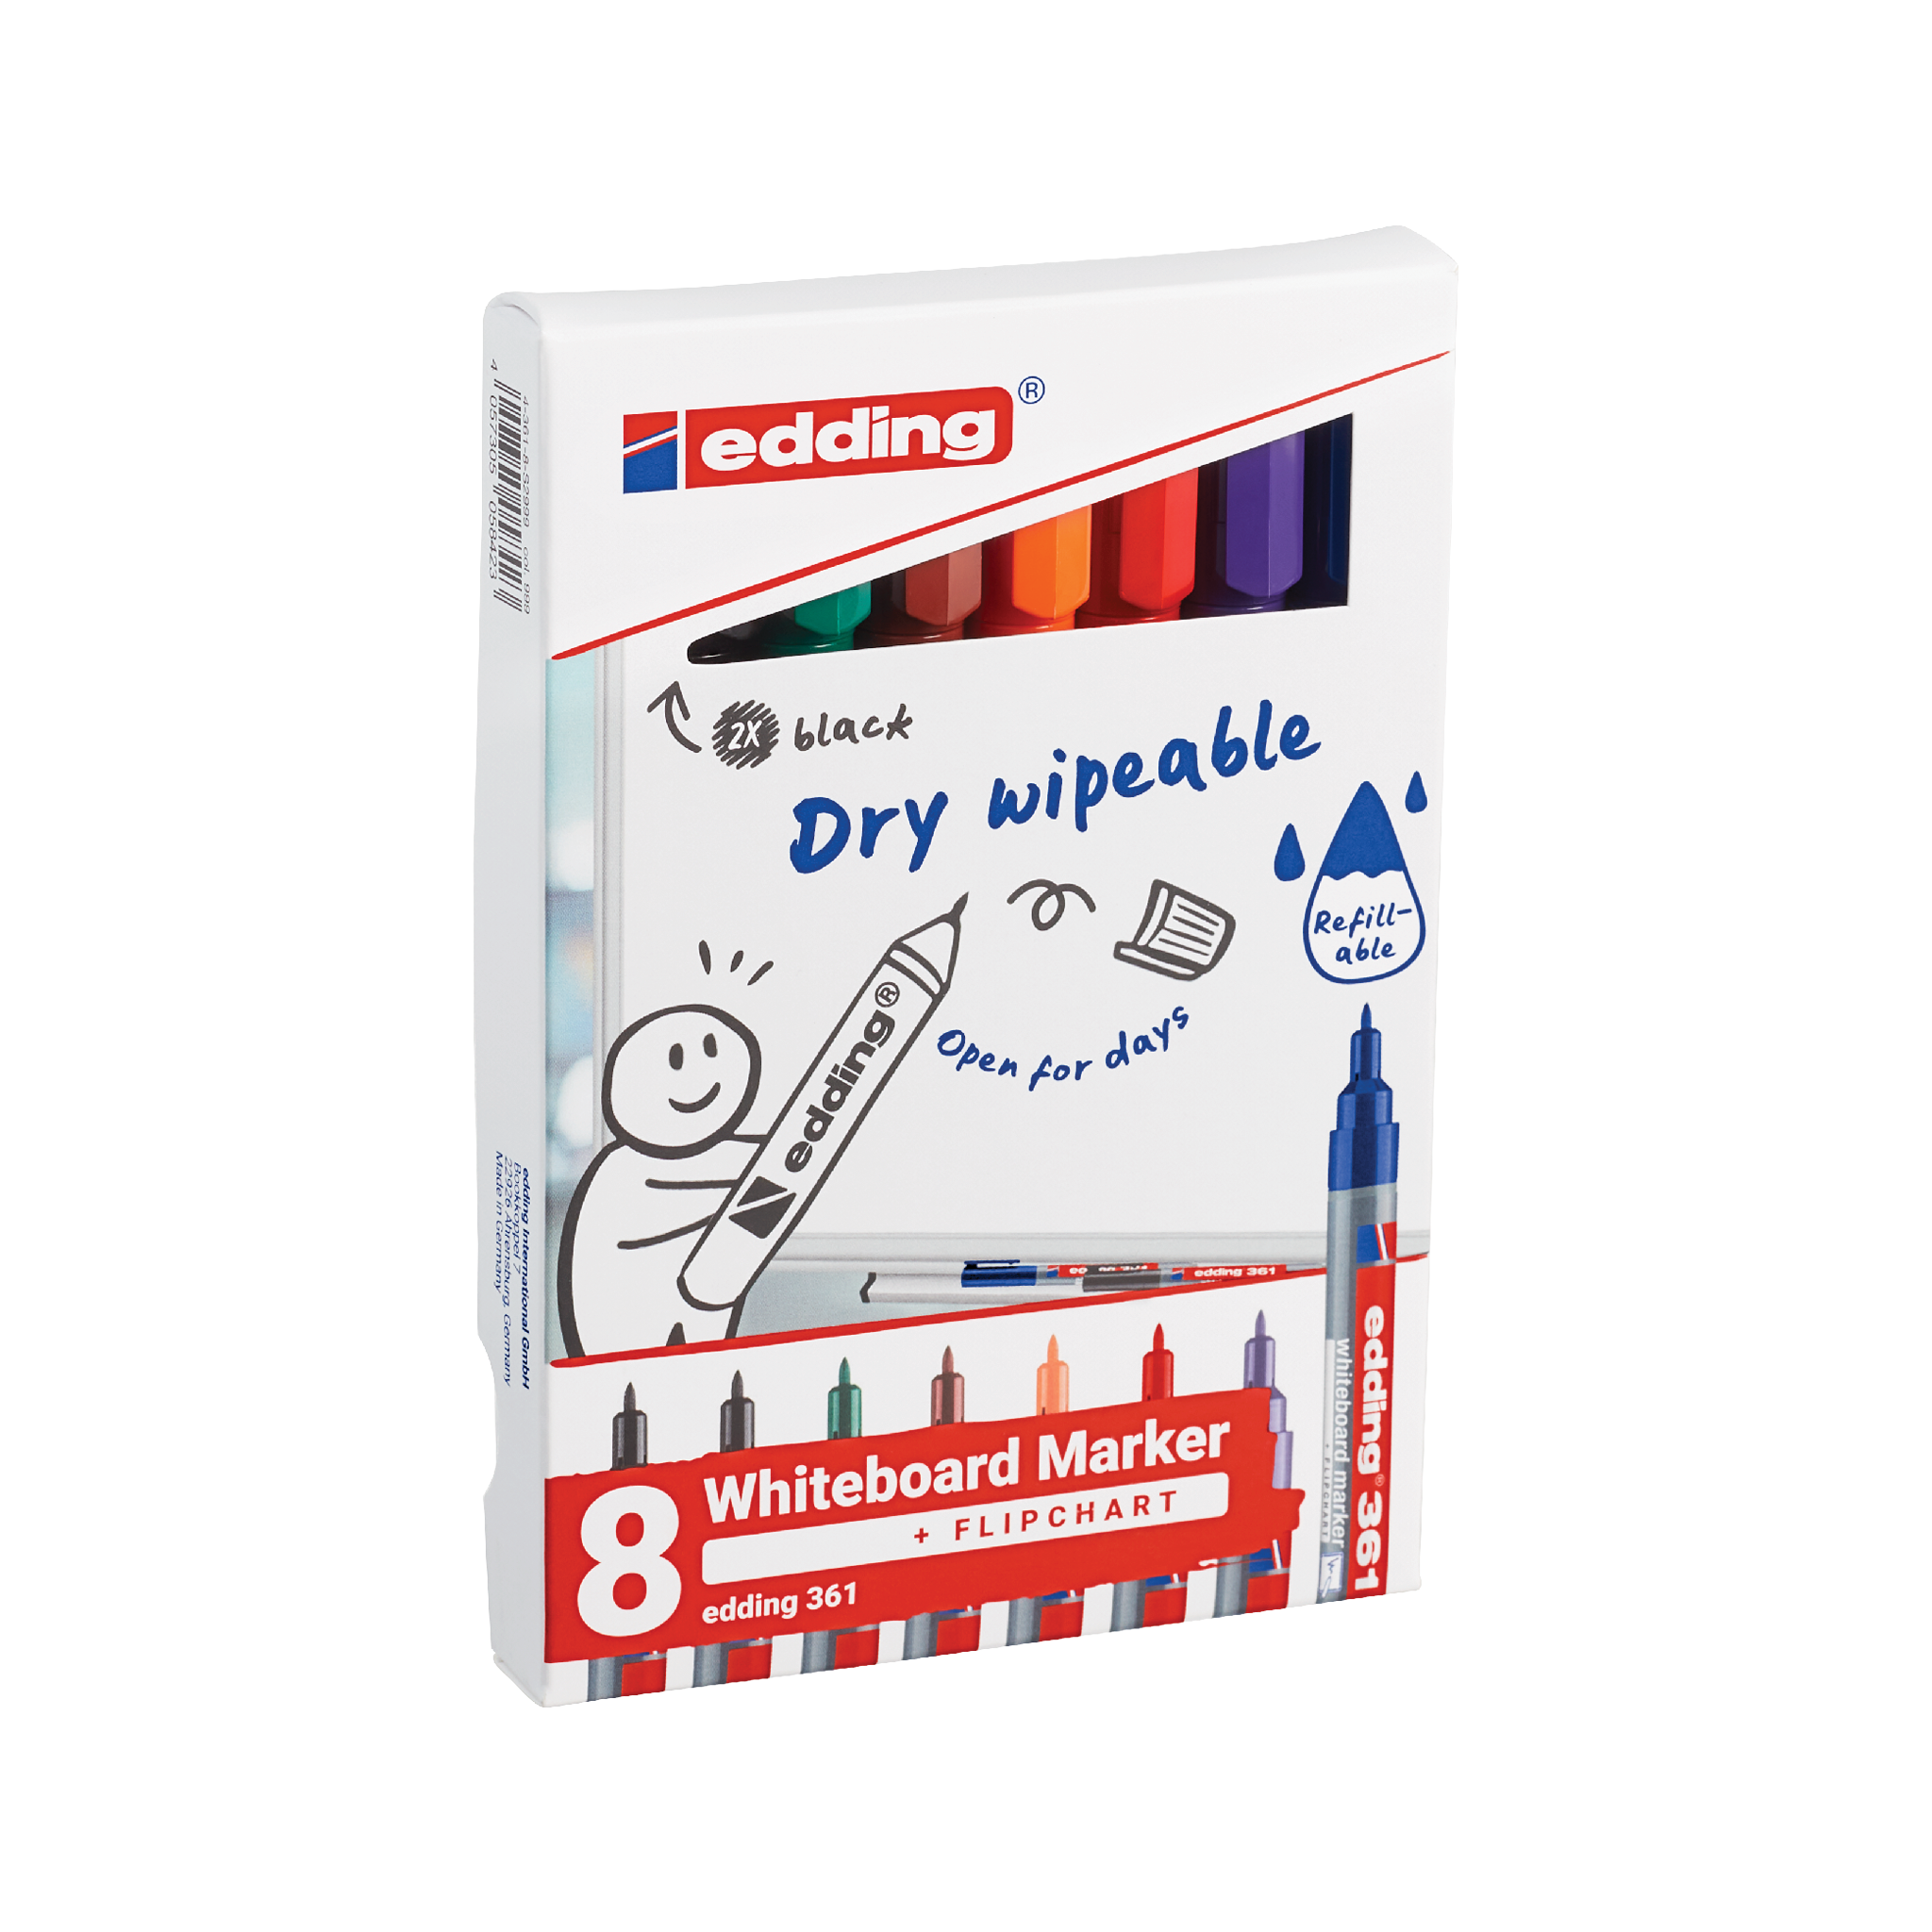 8er-Pack edding 361 Whiteboardmarker in verschiedenen Farben mit trocken abwischbarer und nachfüllbarer Tinte.